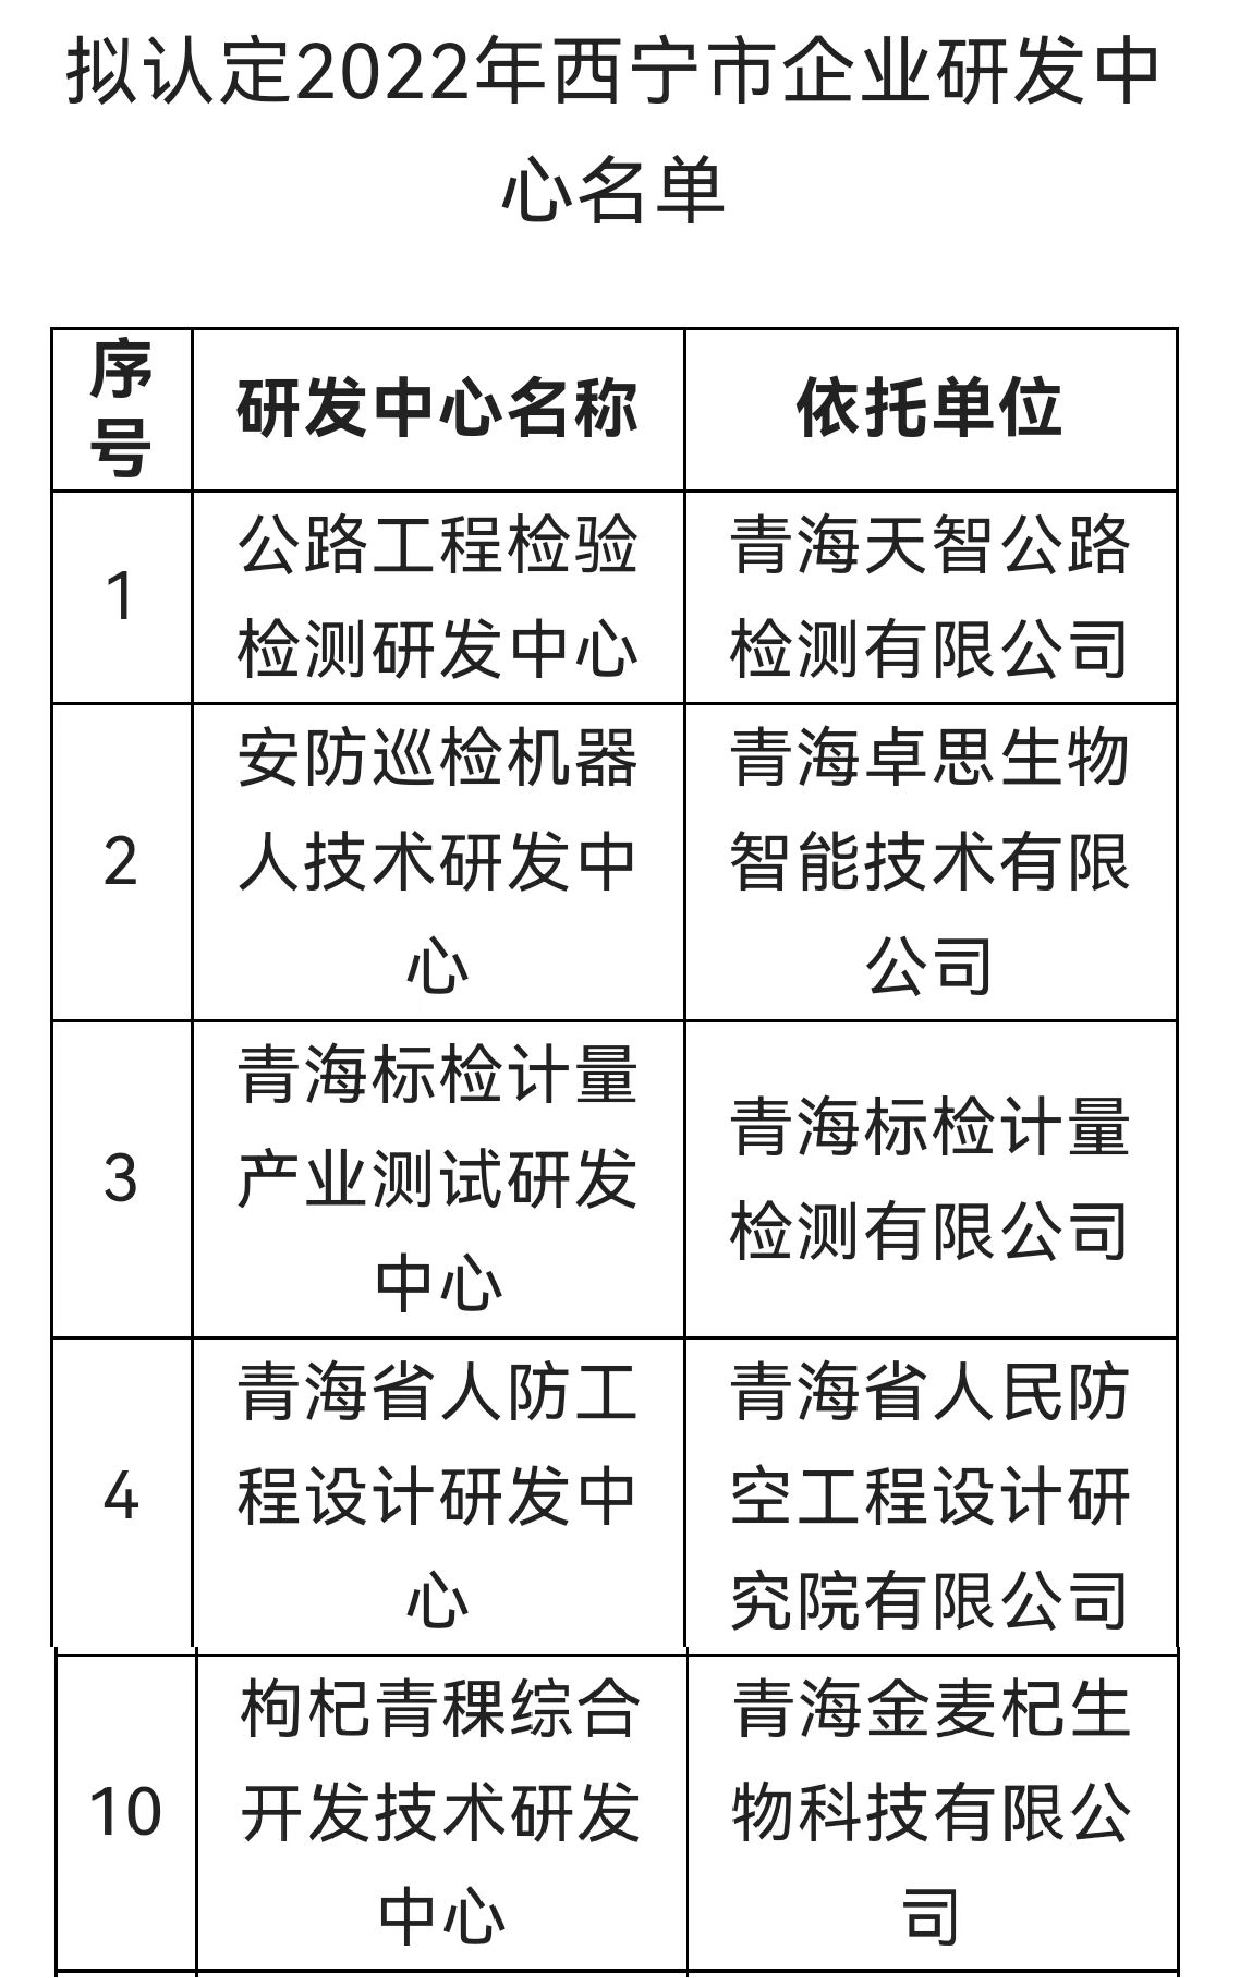 本司“枸杞青稞綜合開發技術研發中心”通過西寧市企業研發中心認定(圖2)